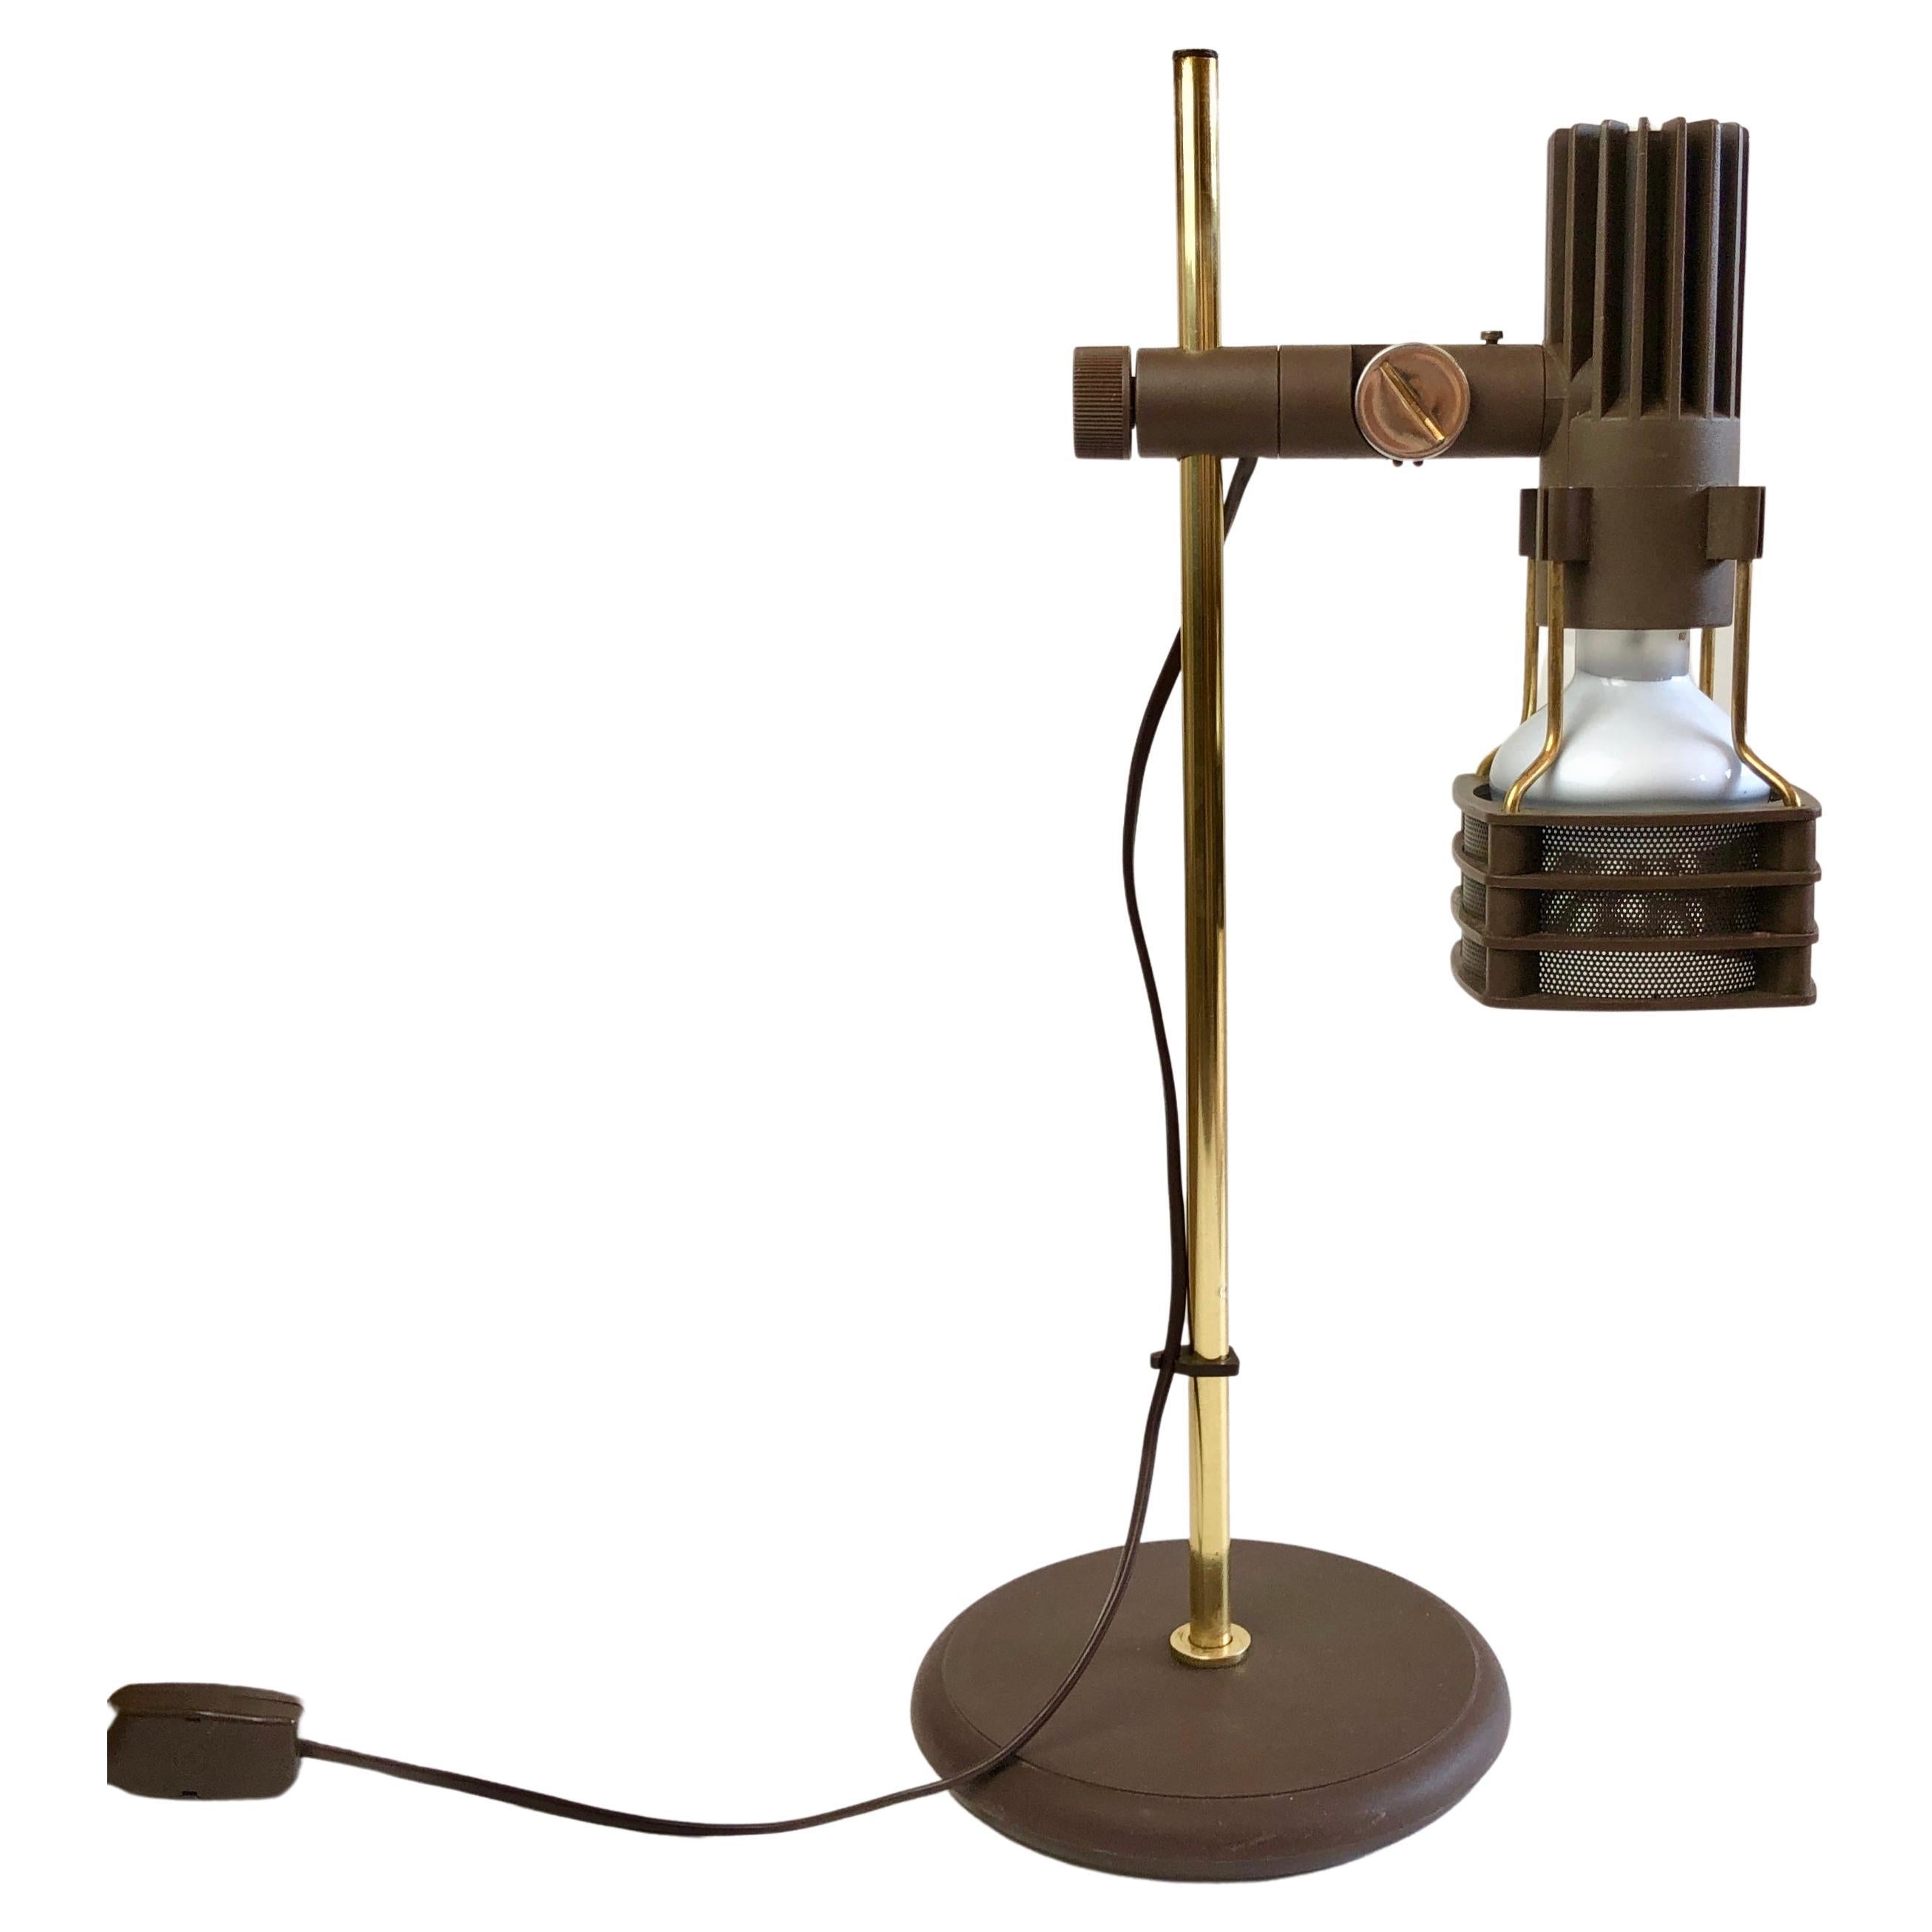 Schreibtischlampe von FASE, Spanien. Original-Lampe, 70er-Jahre, Braun & Gold